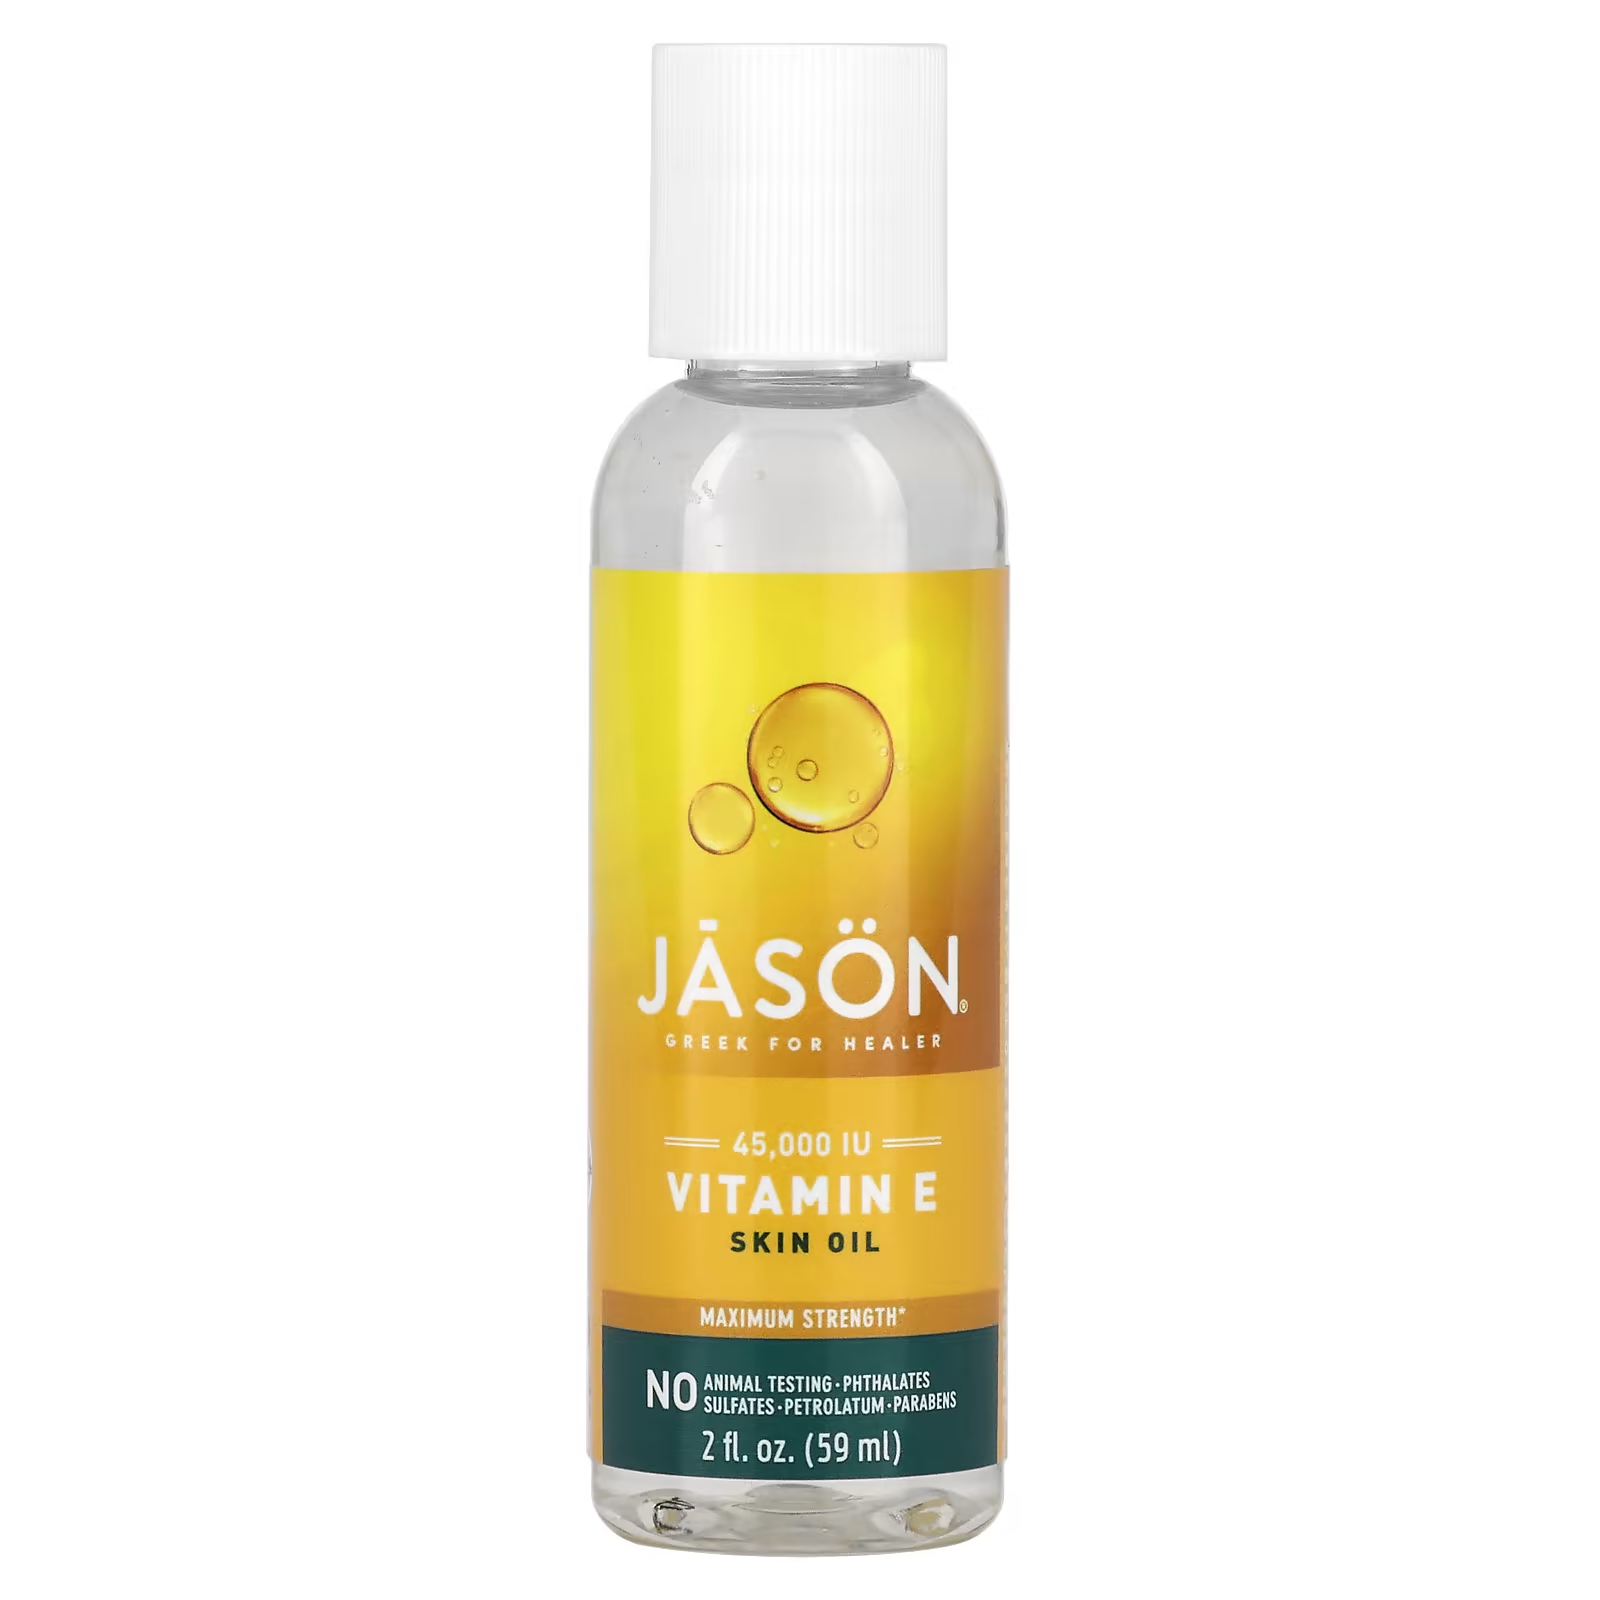 jason natural масло для кожи с витамином е 5000 ме 118 мл 4 жидких унции Натуральное масло для кожи Jason Natural с витамином Е, 59 мл